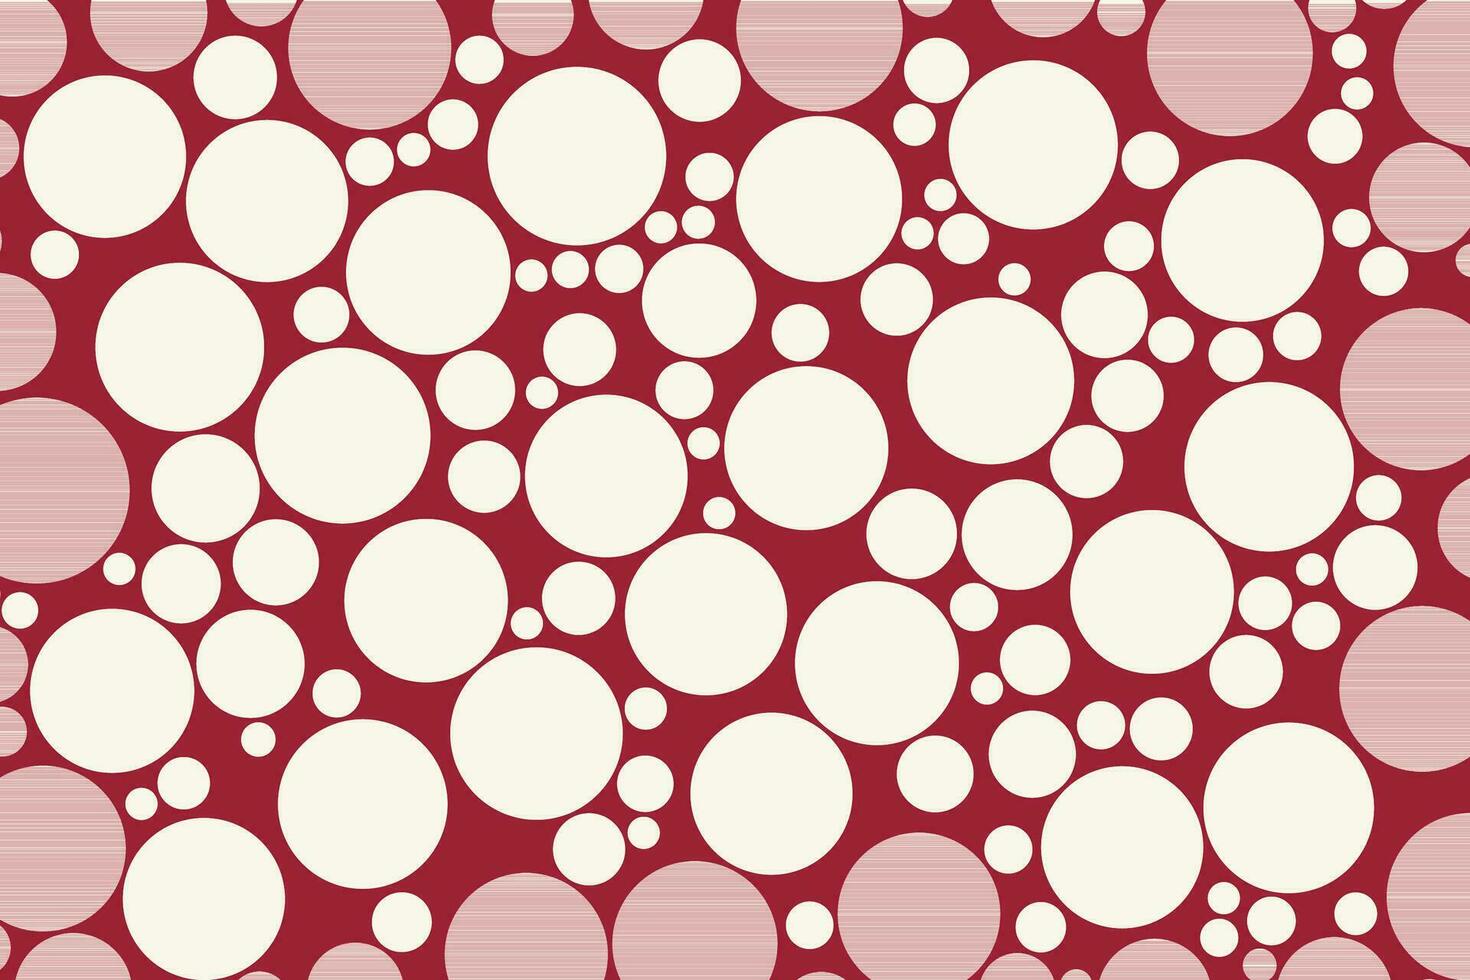 vermelho e branco aleatória círculo mosaico padronizar. vetor fundo.